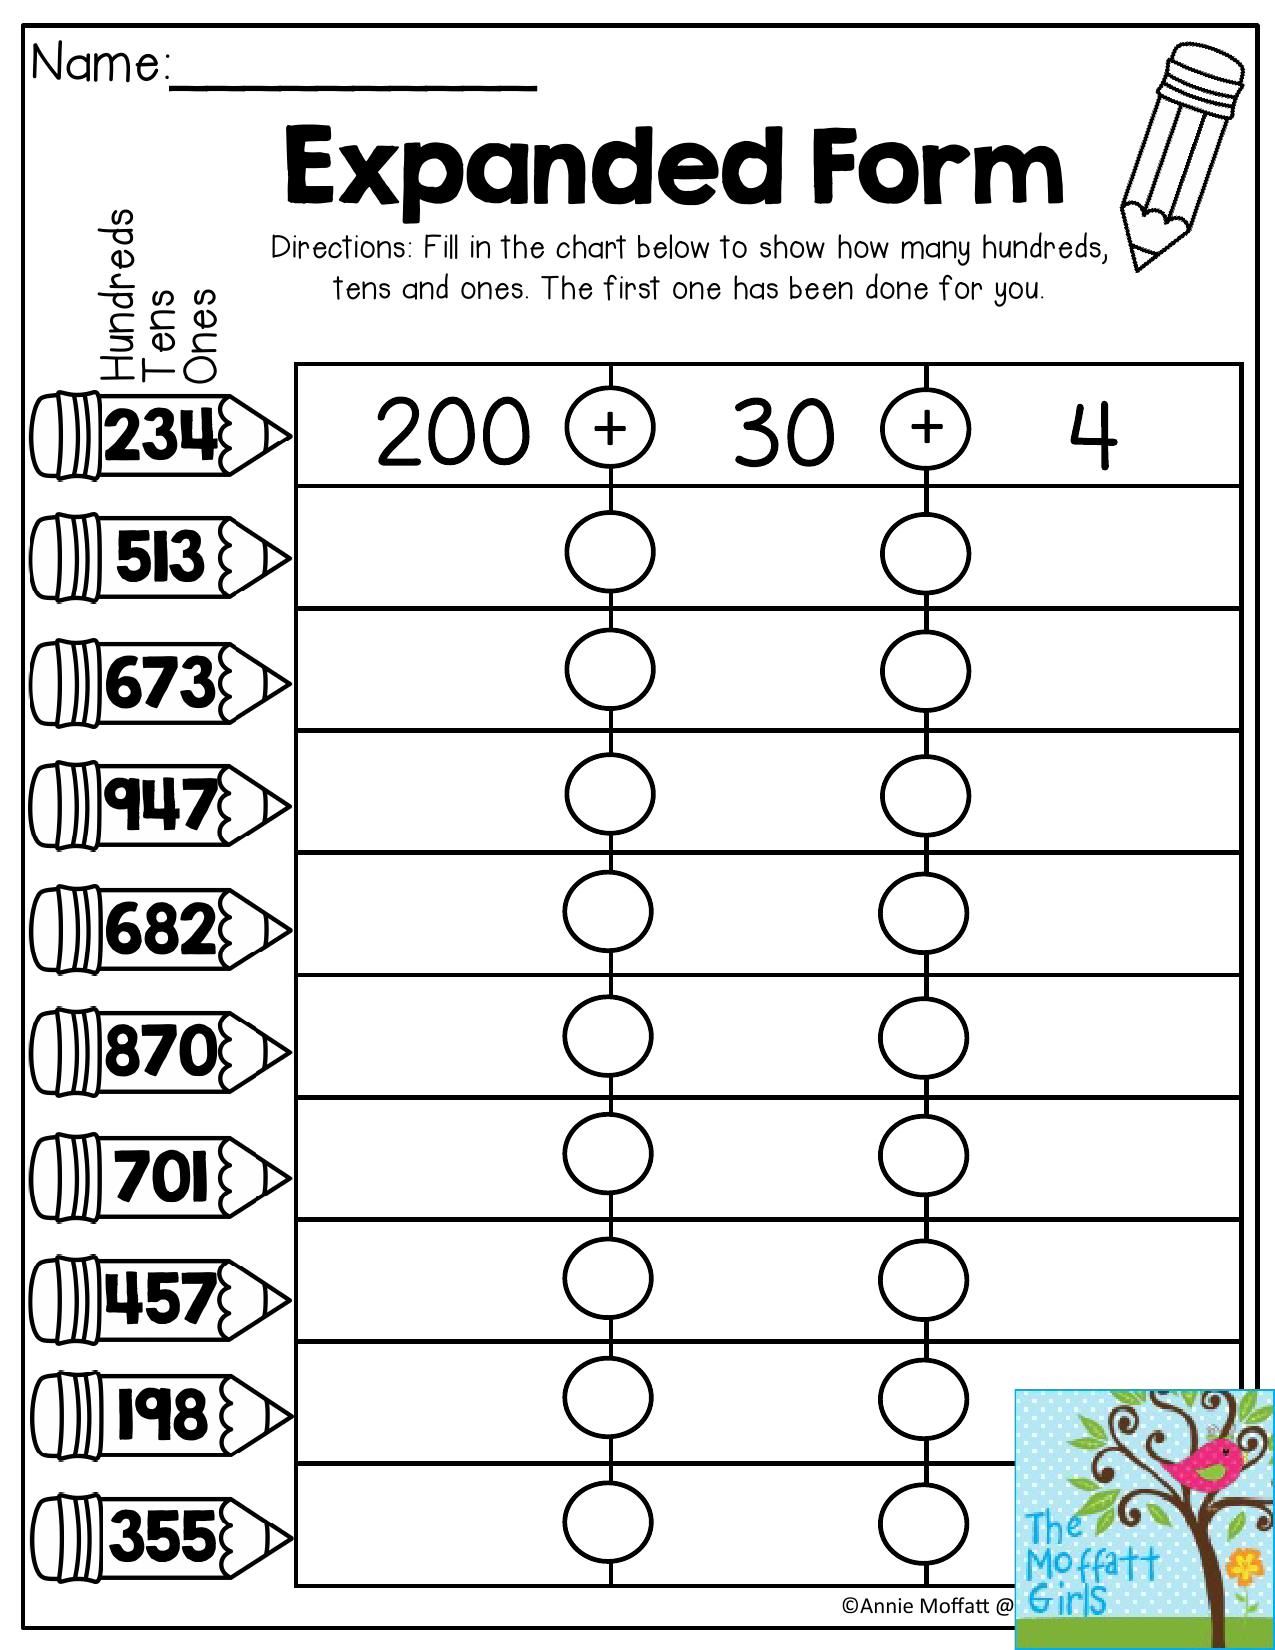 Printable Expanded Form Worksheets 2nd Grade Pdf